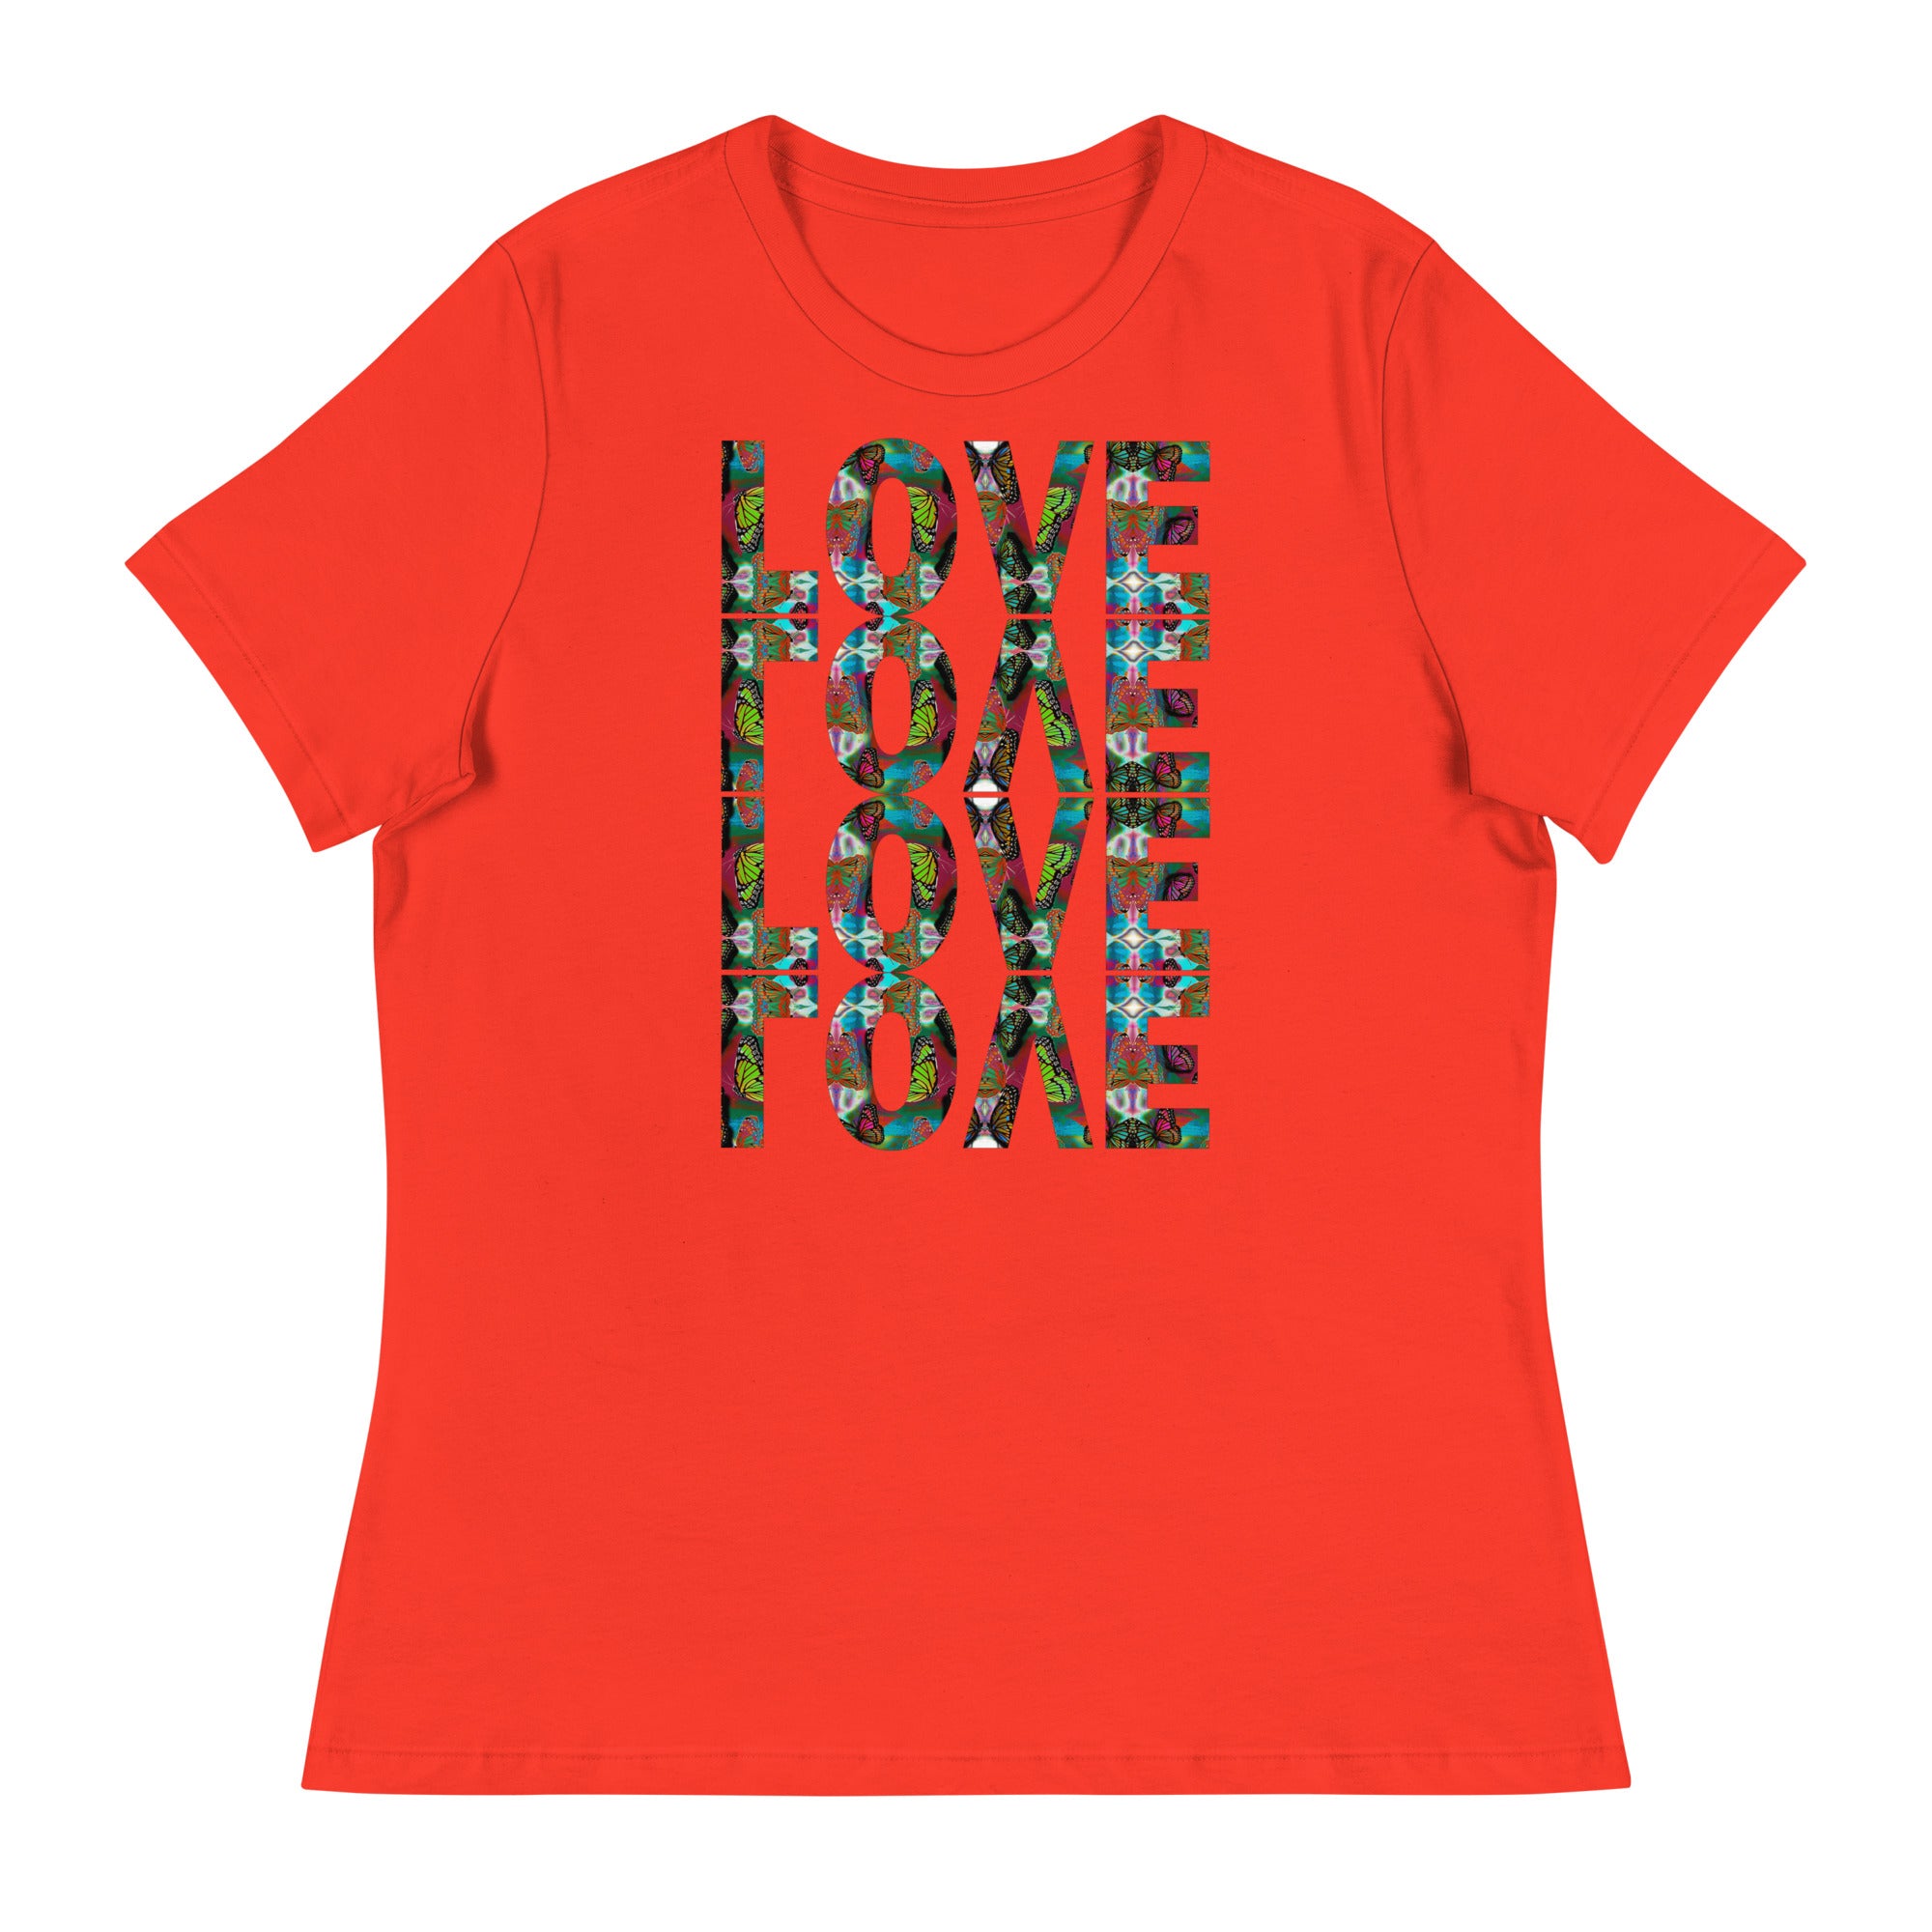 LOVE x 4 ~ Women's Graphic T-Shirt, Butterfly Word Art Short Sleeve Top